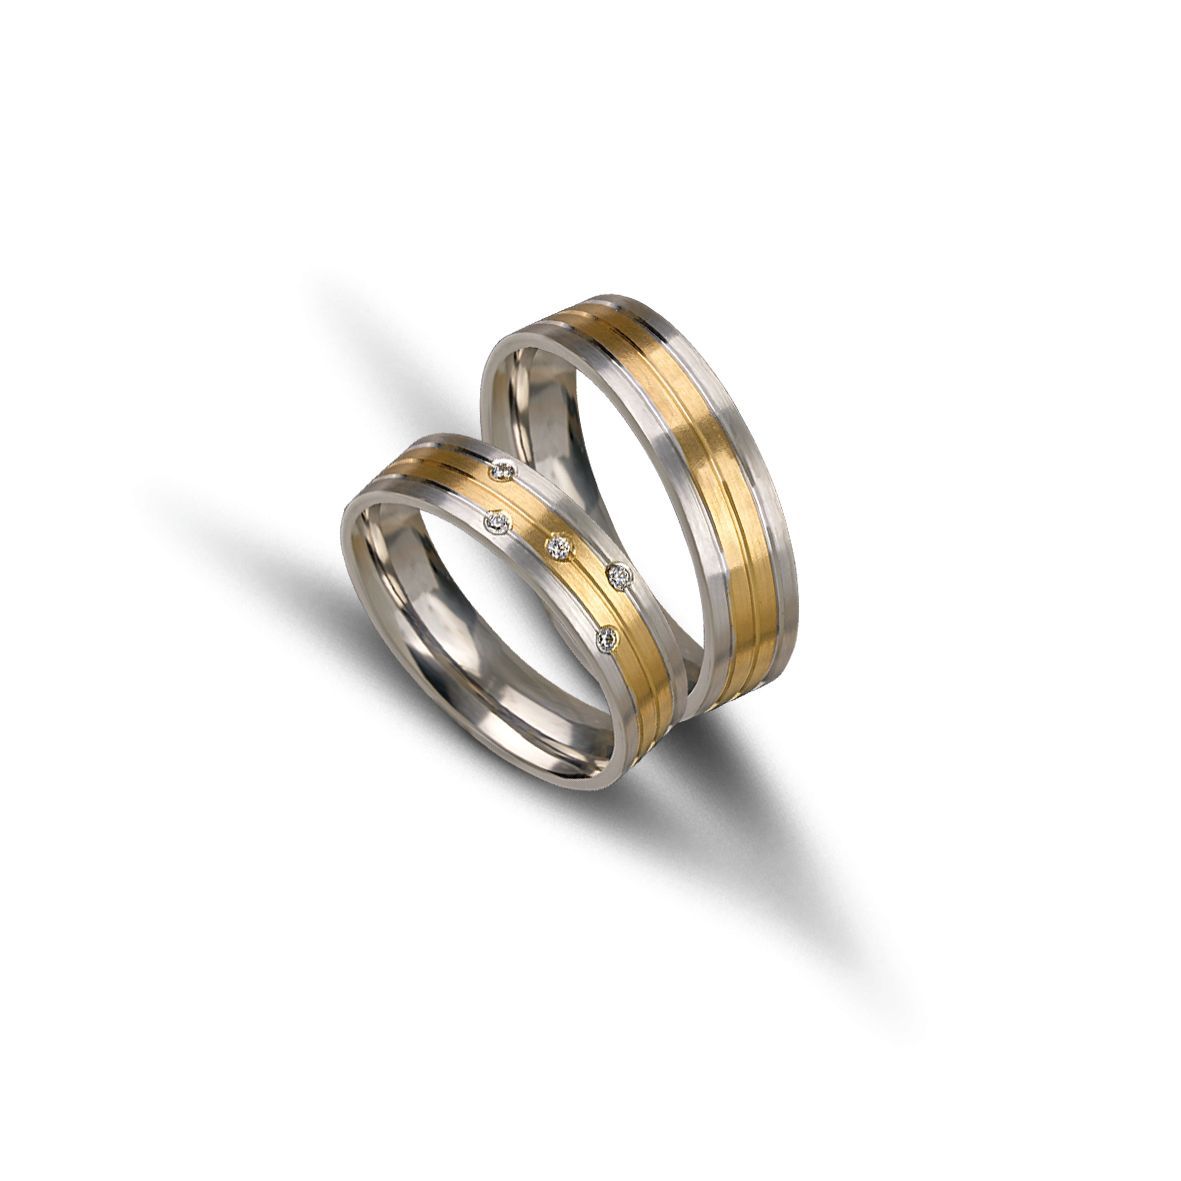 White gold & gold wedding rings 5mm  (code VK2020/50)